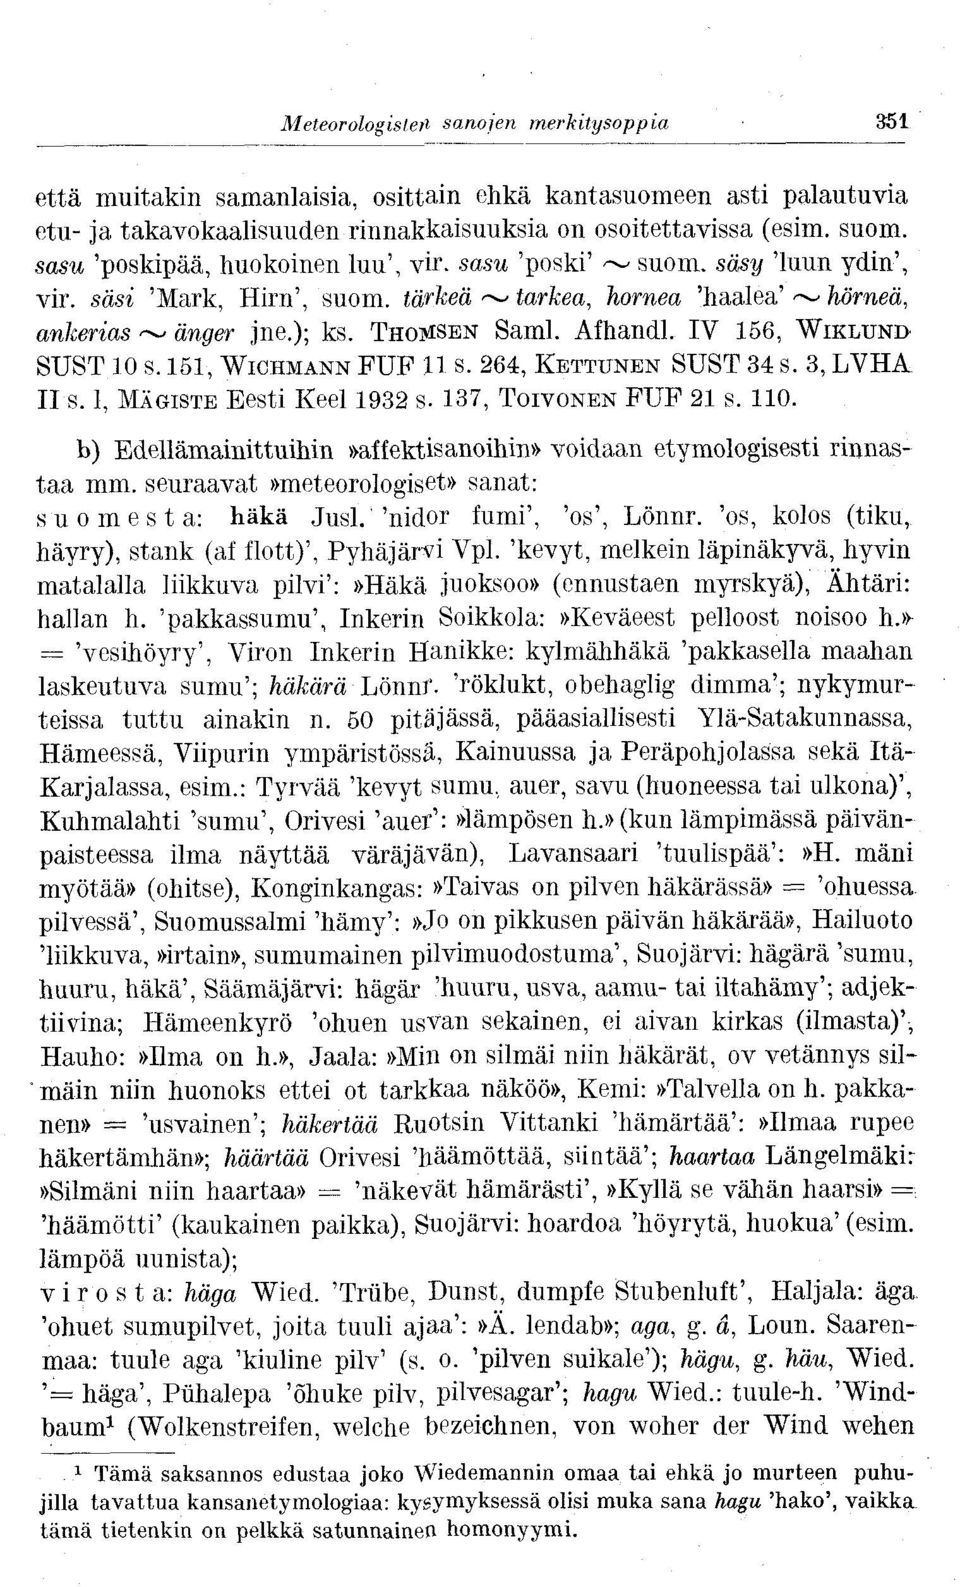 IV 156, WIKLUNI> SUST 10 s. 151, WICHMANN PUP 11 s. 264, KETTUNEN SUST 34 s. 3, LVHA II s. 1, MÄGISTE Eesti Keel 1932 s- 137, TOIVONEN PUP 21 s. 110.